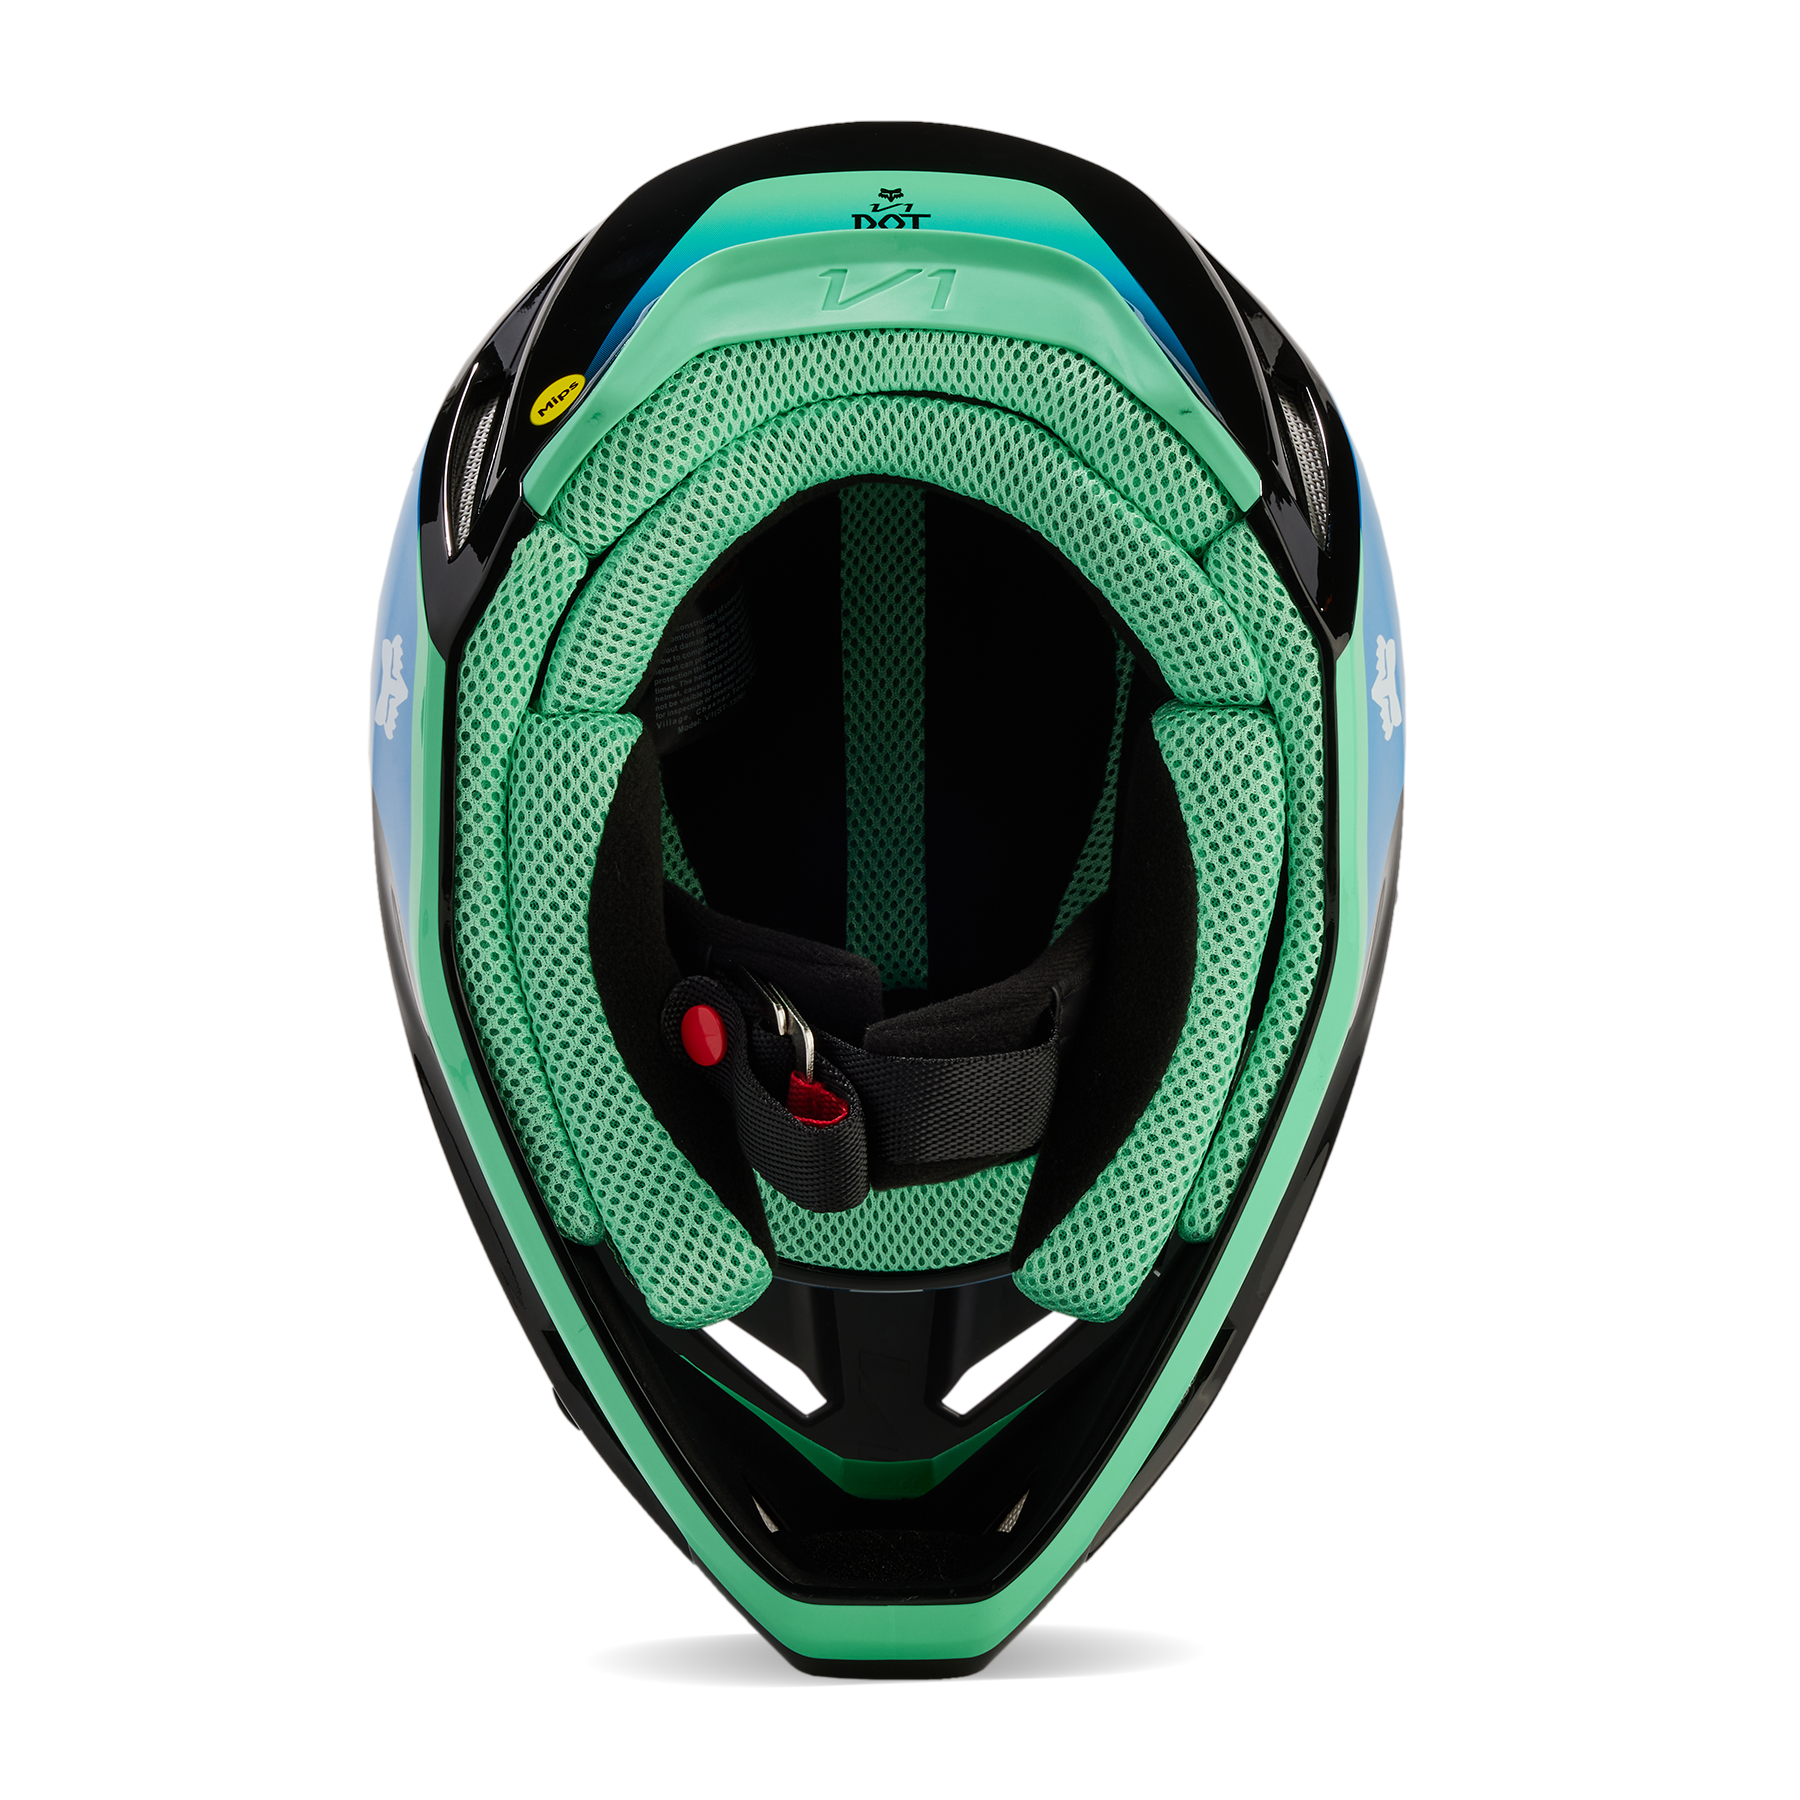 Fox Racing V1 Ballast Helmet Adult Blue